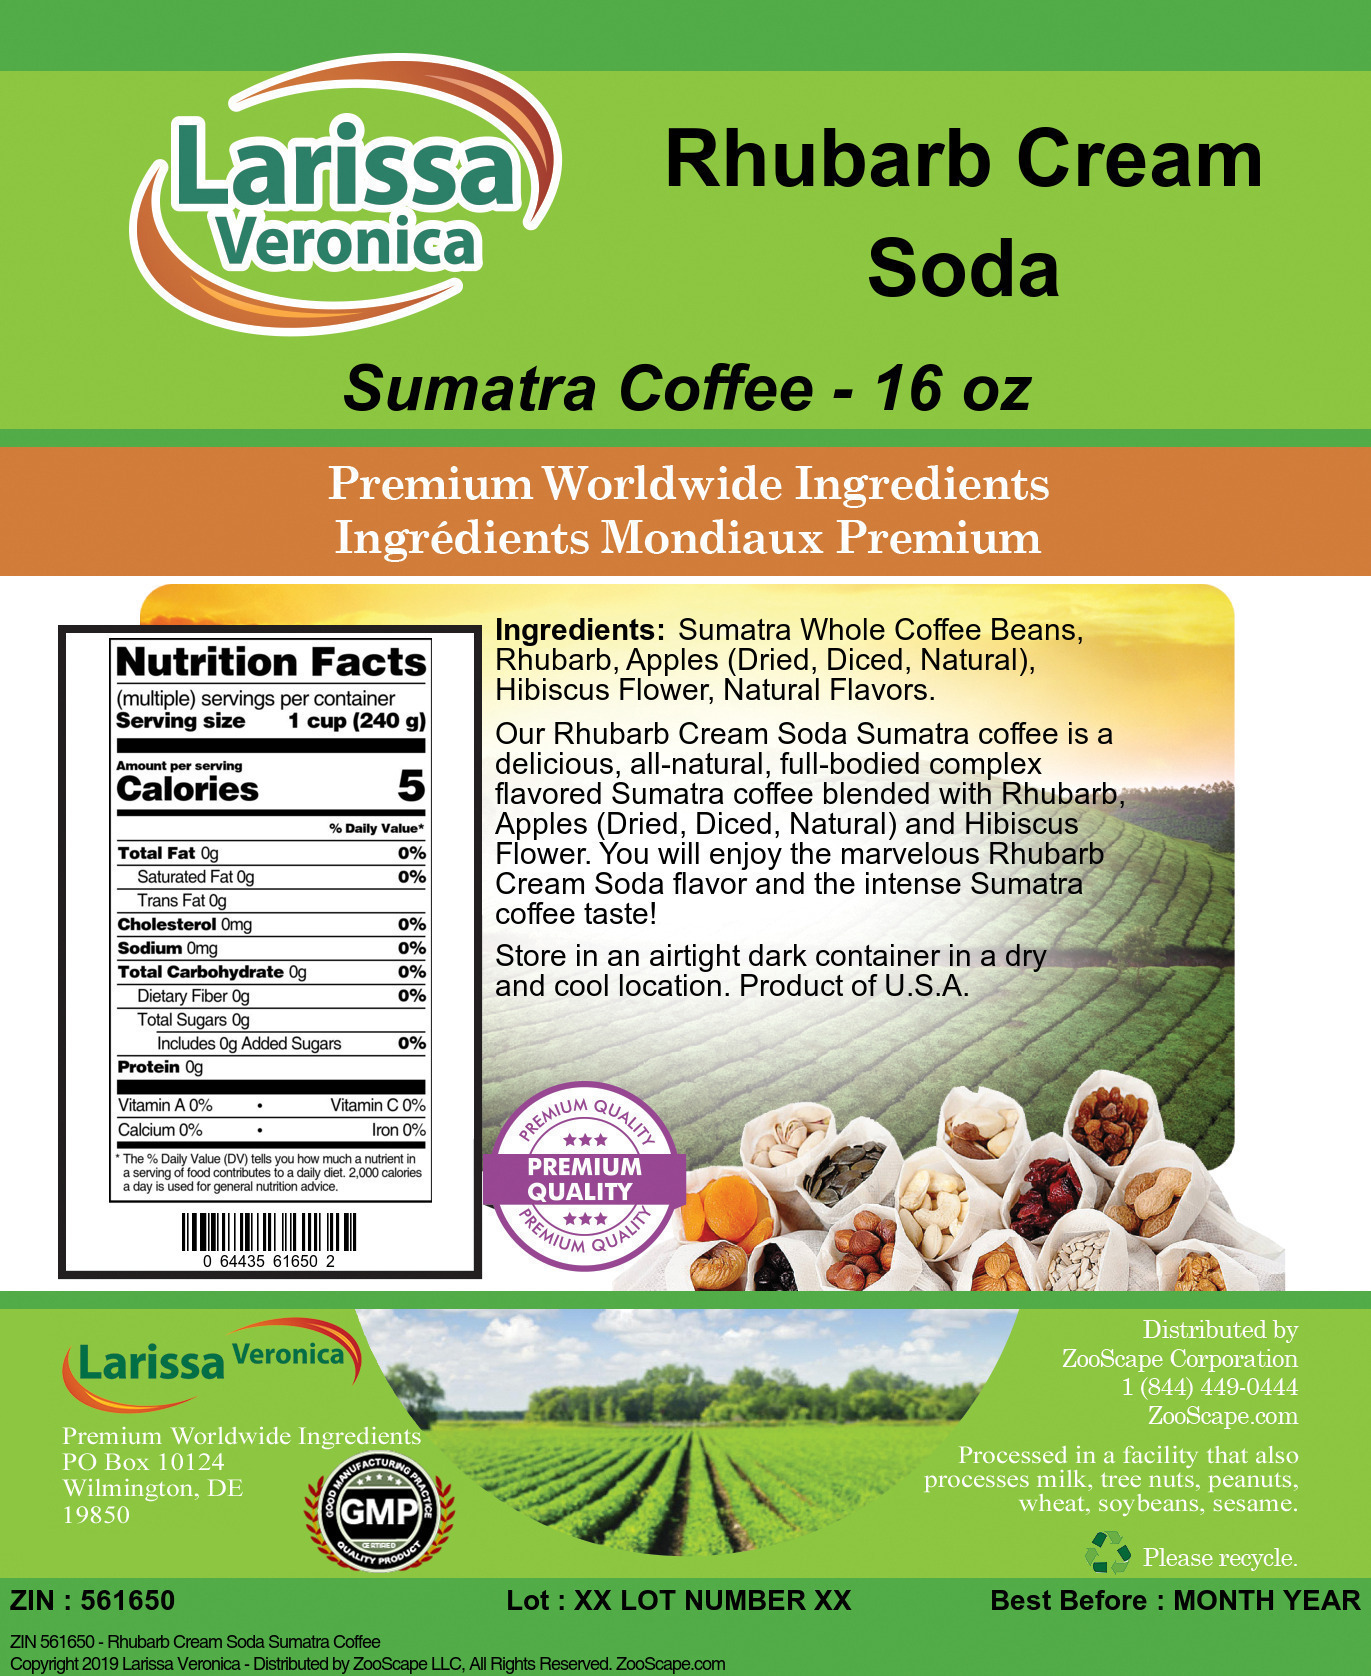 Rhubarb Cream Soda Sumatra Coffee - Label